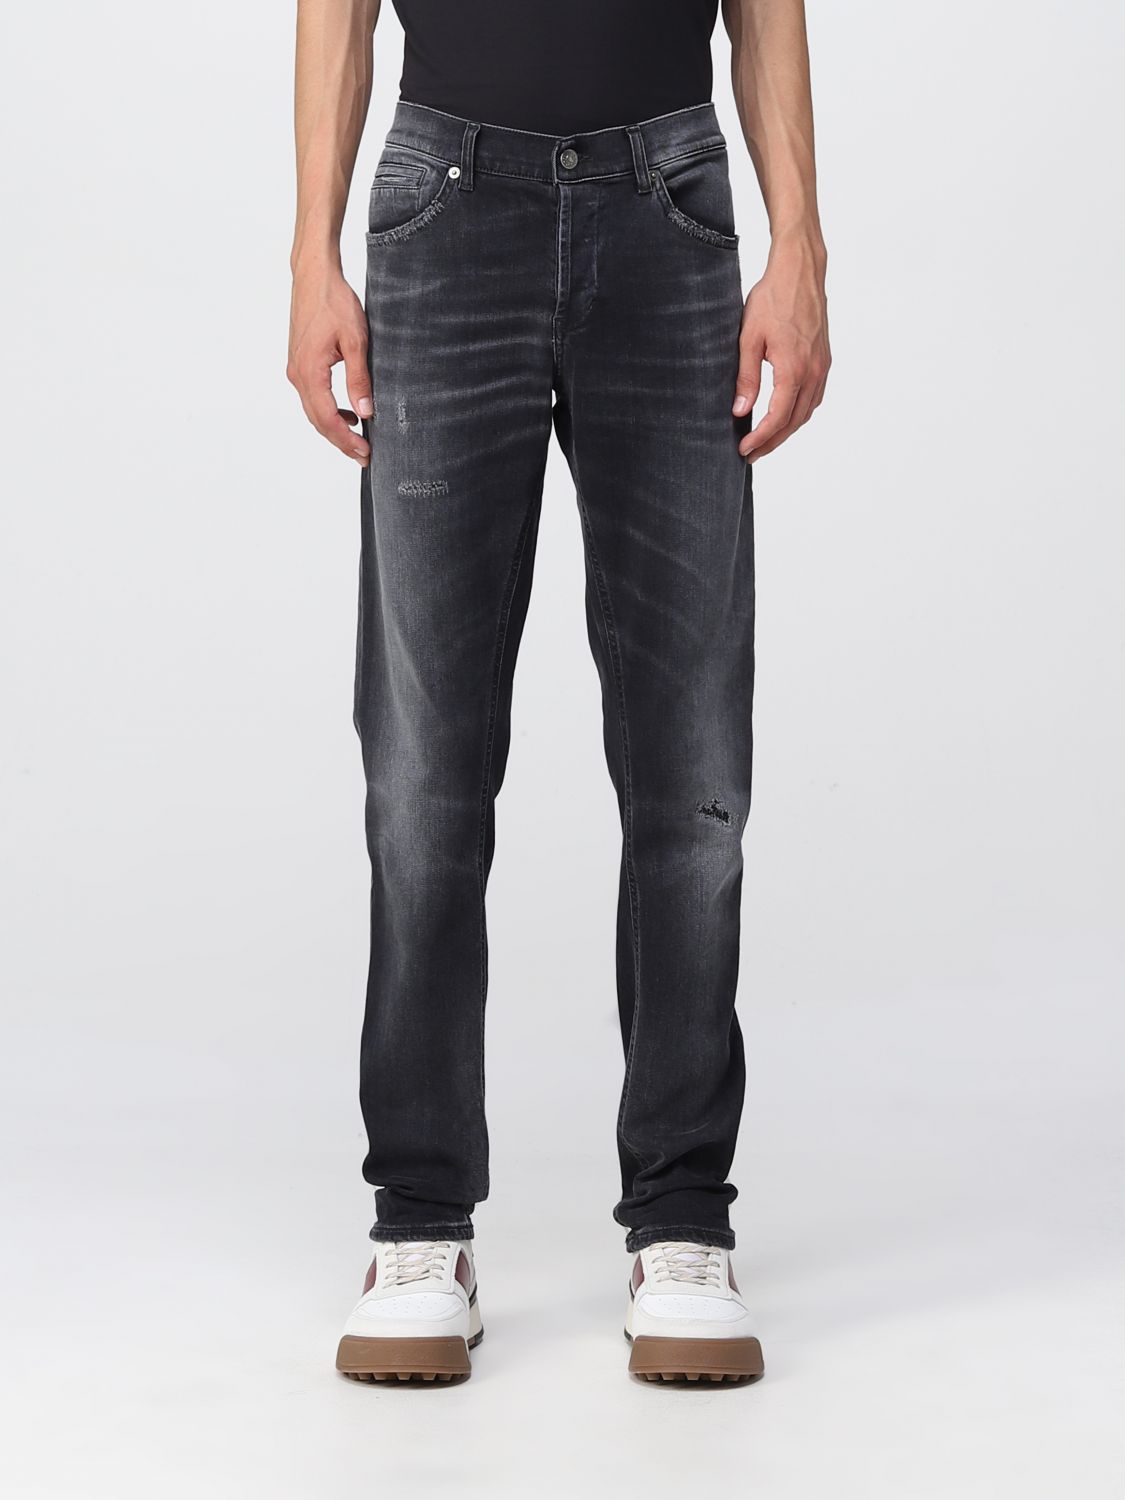 DONDUP: jeans for man - Grey | Dondup jeans UP232DSE249UDI8 online on ...